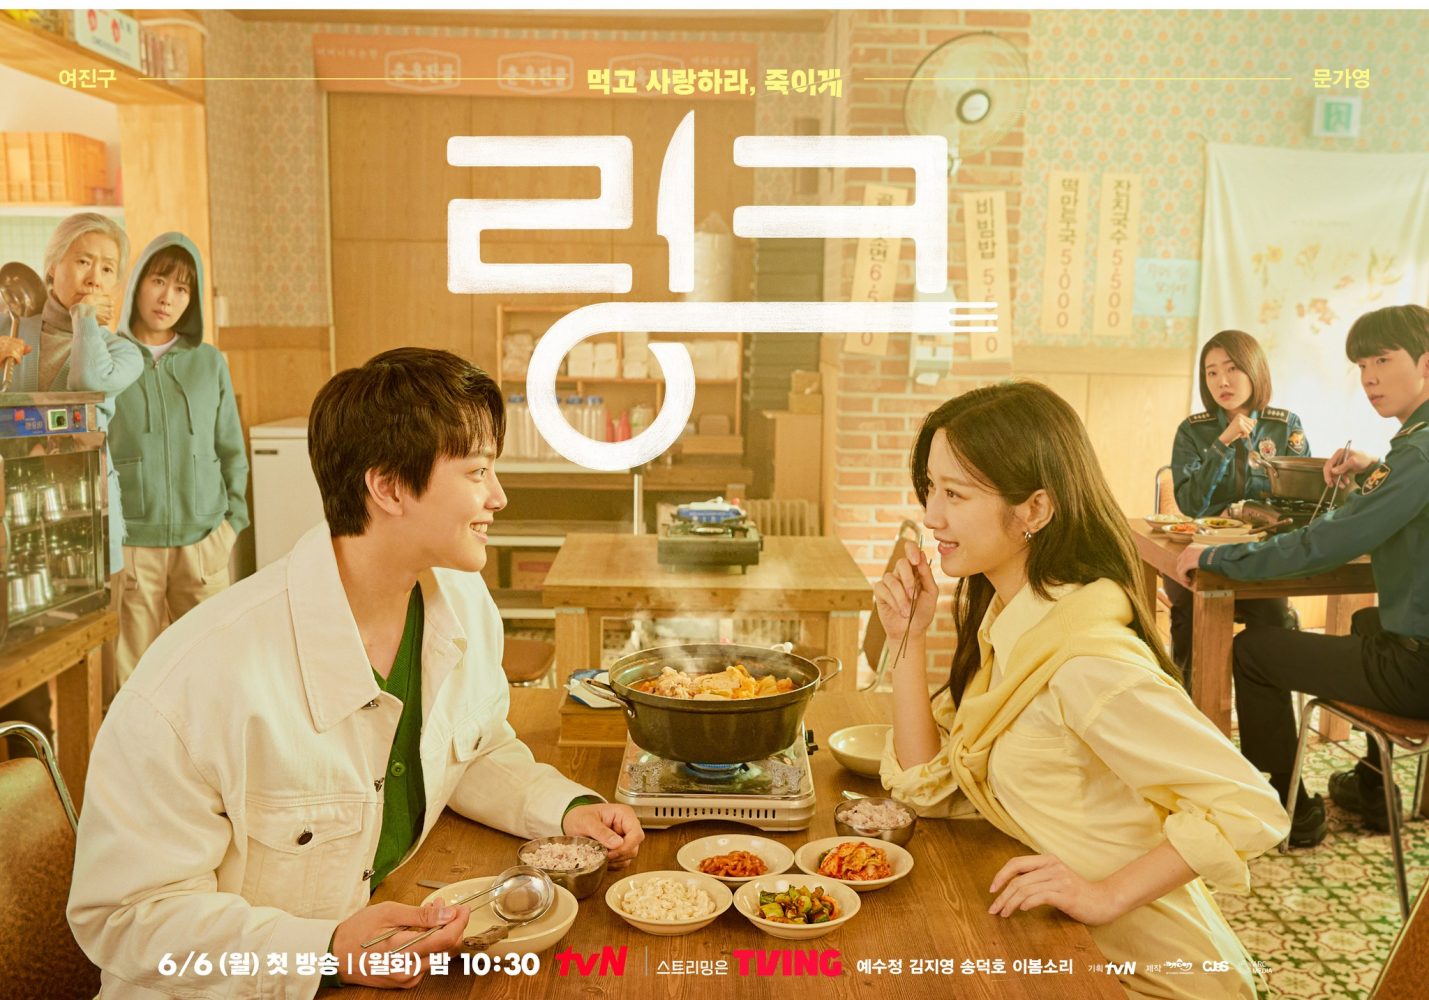 Phim mới của Moon Ga Young: Liên kết: Ăn, yêu, chết - Link: Eat, Love, Kill (2022)